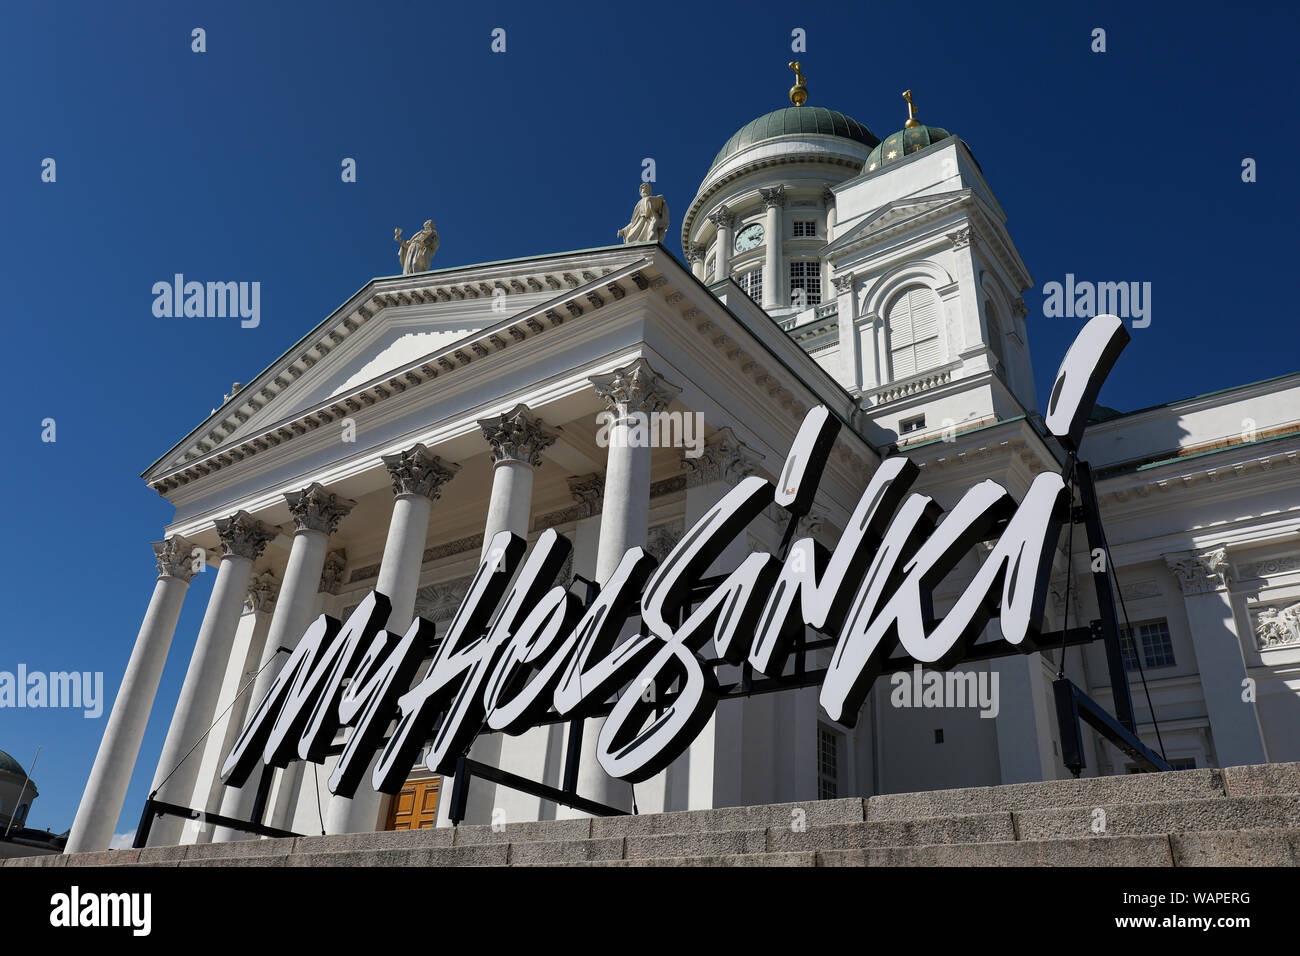 Mon panneau Helsinki se trouve en face de la cathédrale d'Helsinki, en Finlande Banque D'Images